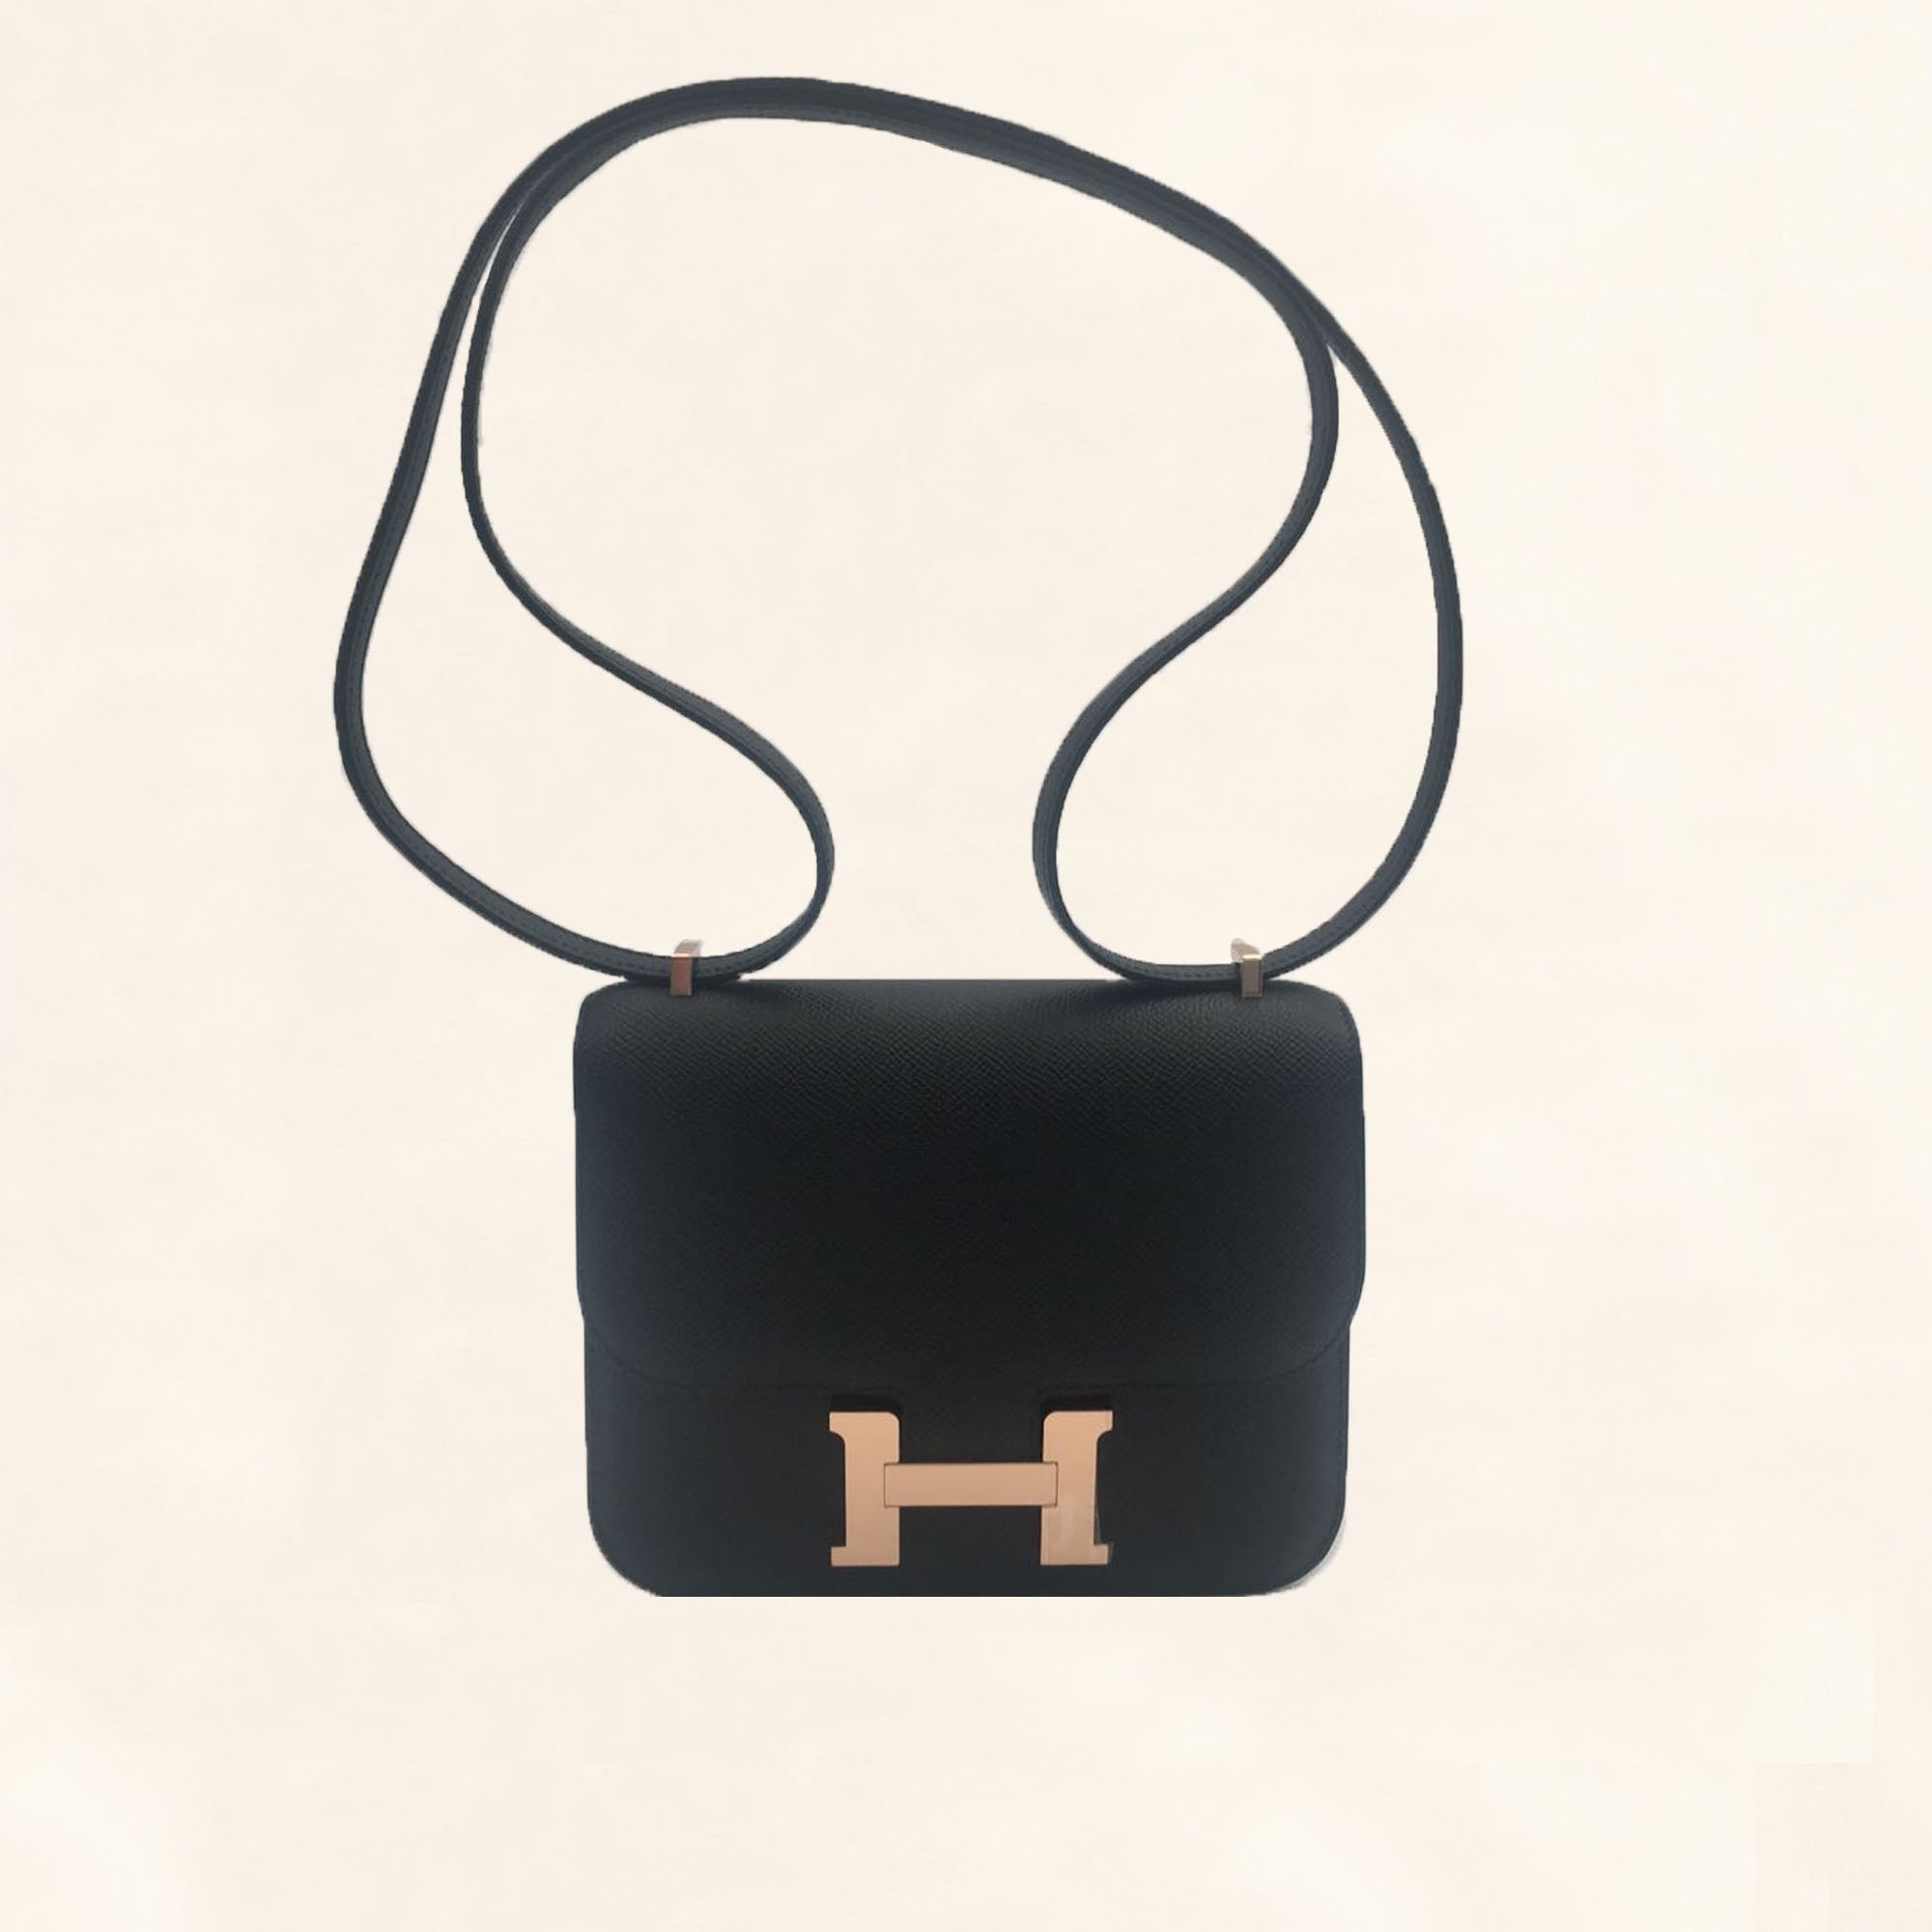 Hermes Evelyne III 29 Bag In Black (Noir) With Gold Hardware at